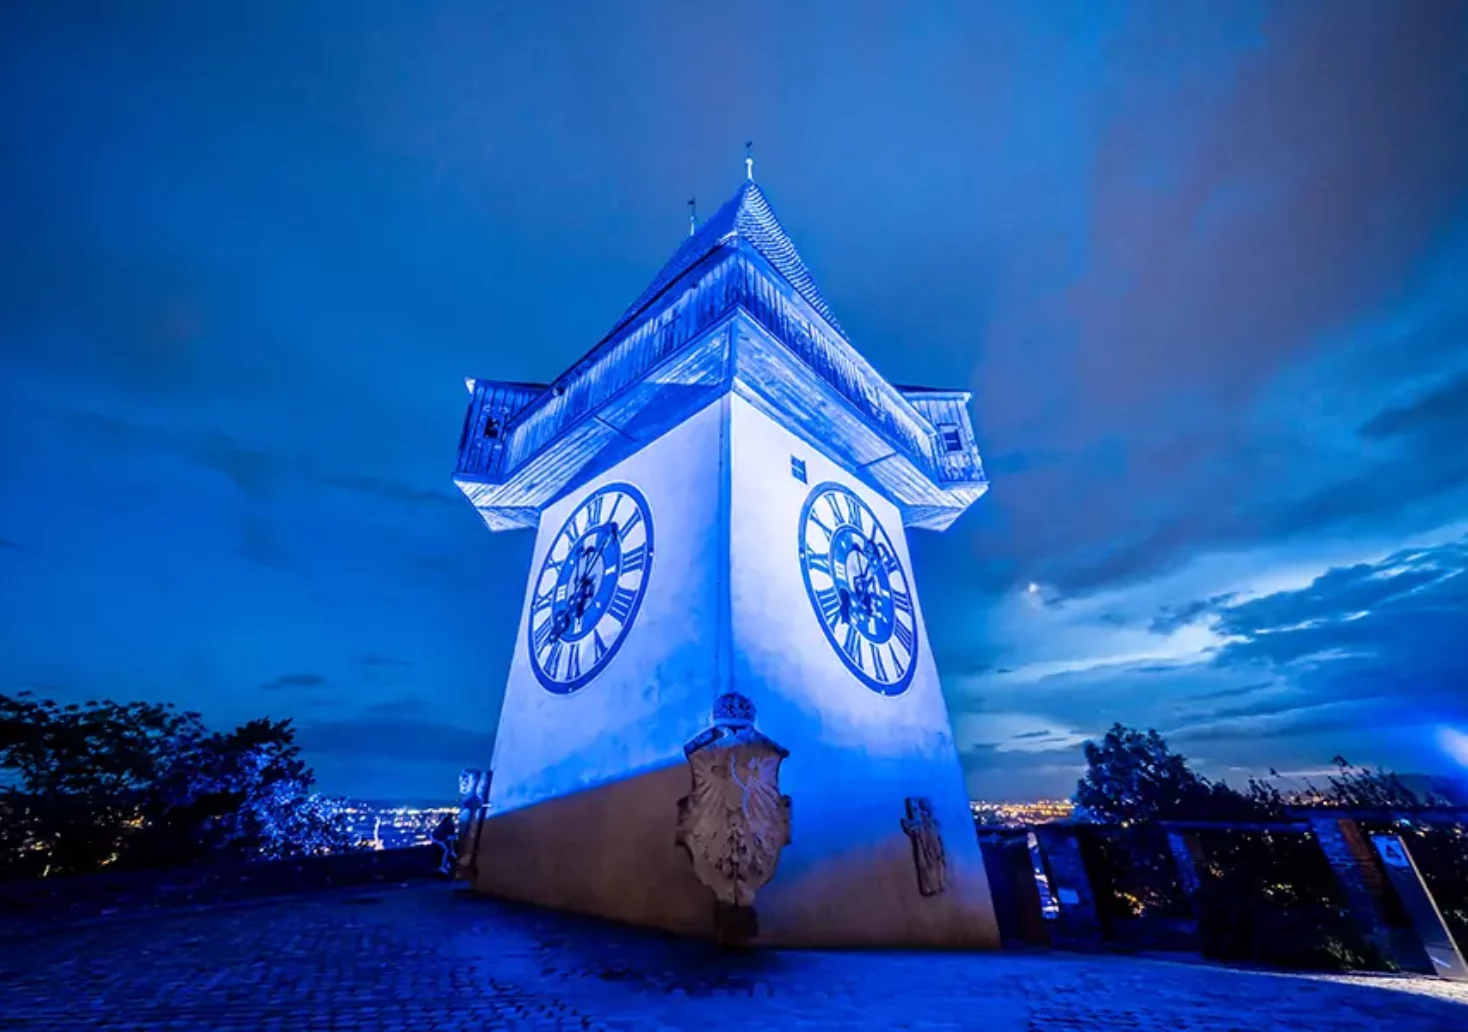 Weltweite Aktion: Deshalb leuchtet der Grazer Uhrturm heute blau